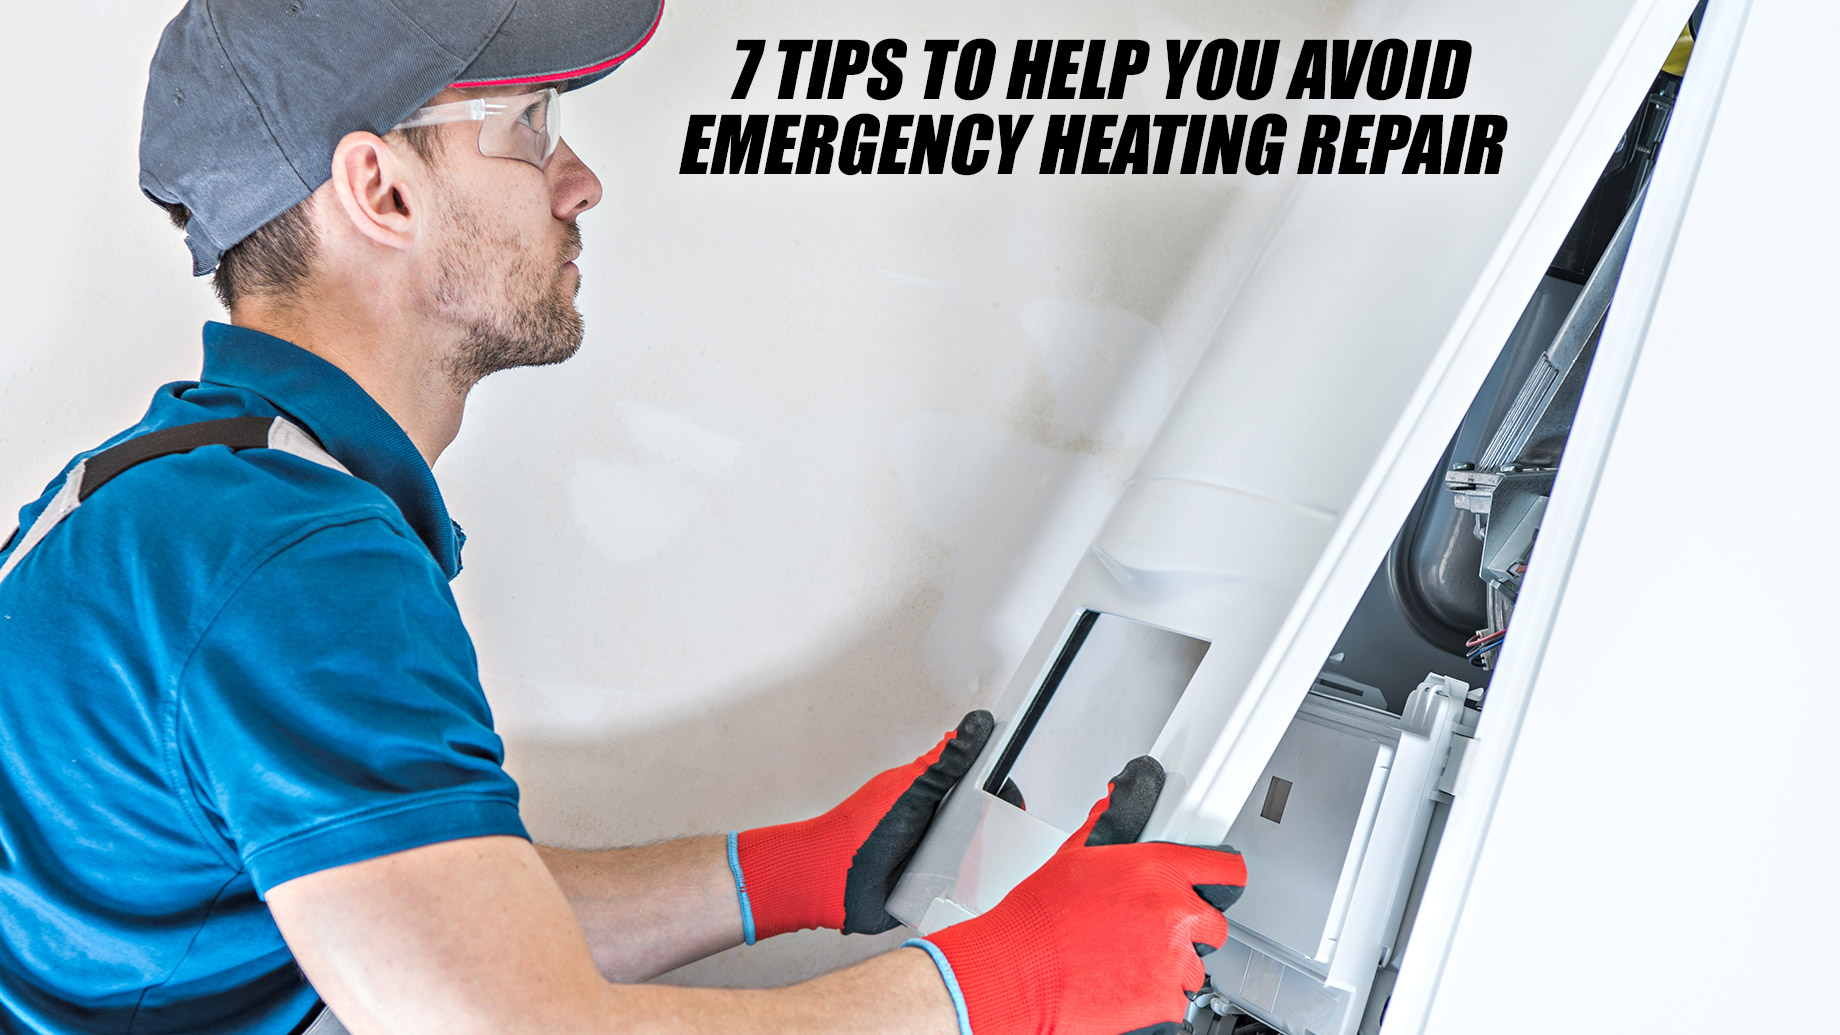 7 Tips to Help You Avoid Emergency Heating Repair